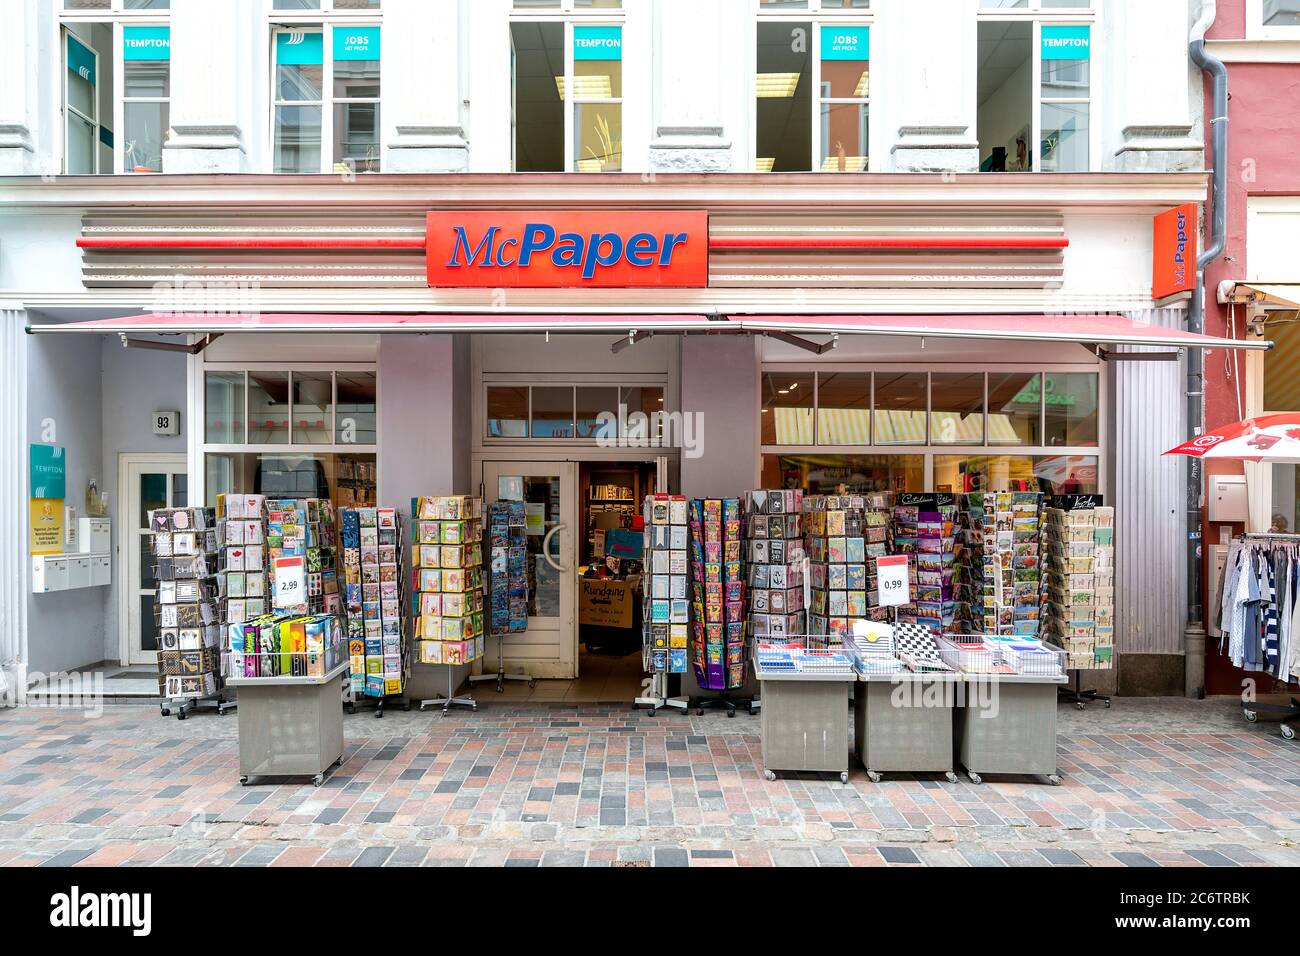 McPaper-Geschäft in Rostock, Deutschland. McPaper ist Marktführer im deutschen Papier- und Schreibwarenhandel. Stockfoto